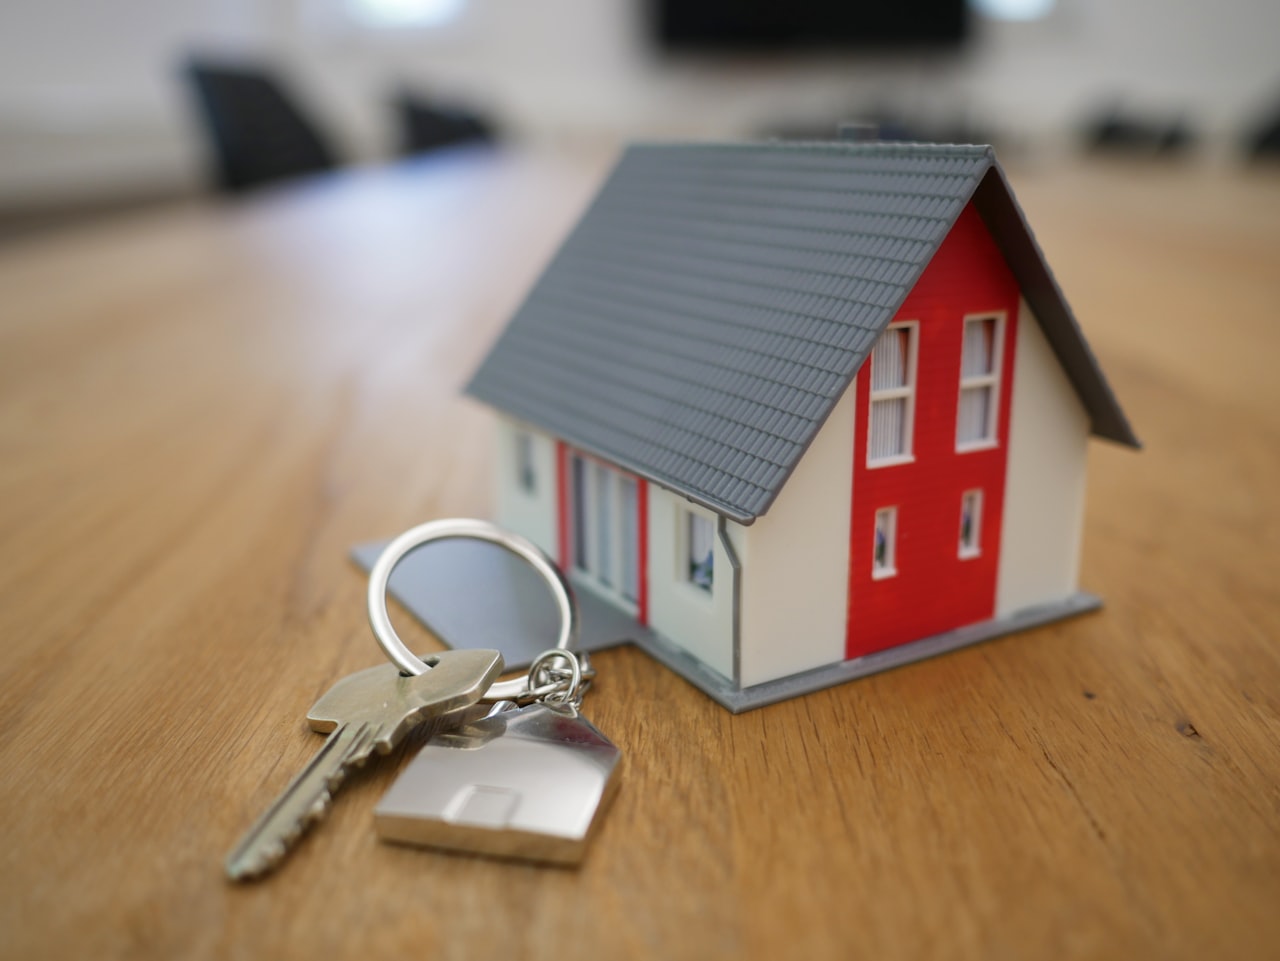 tiny house and key